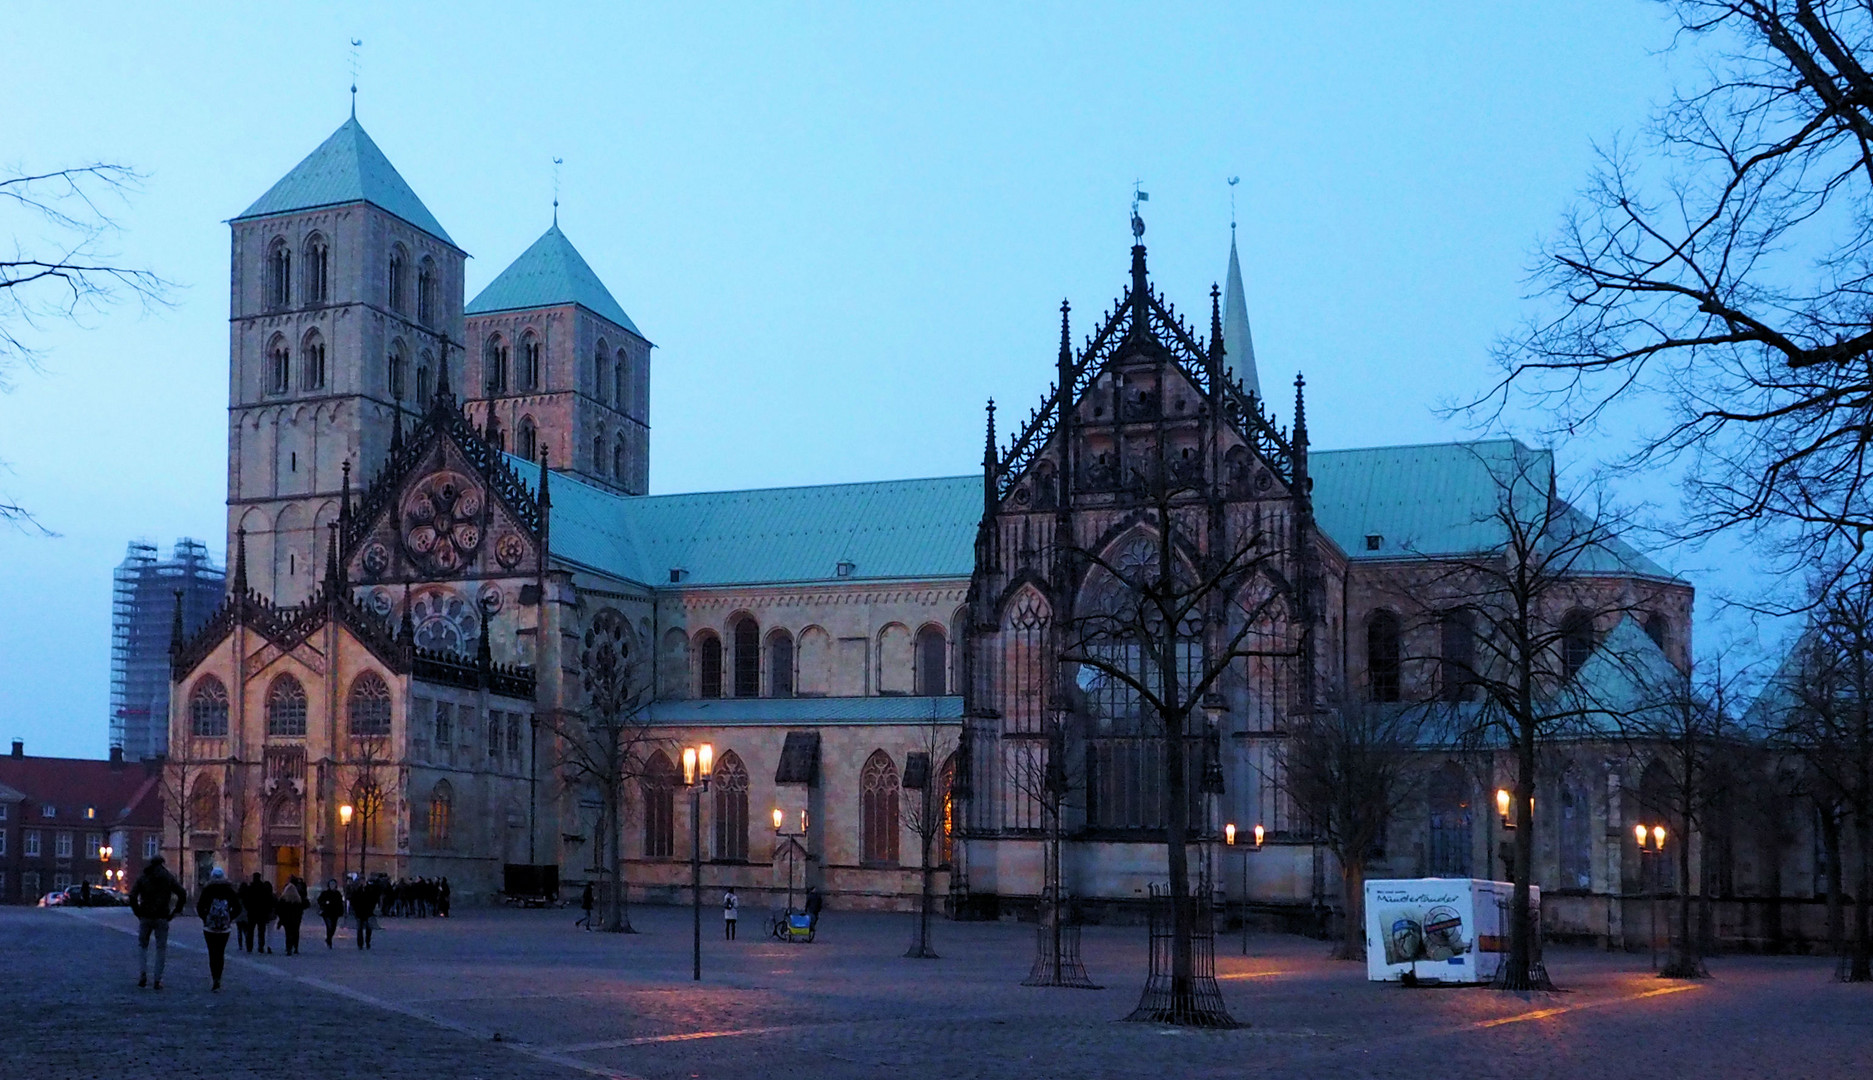 Dom zu Münster 